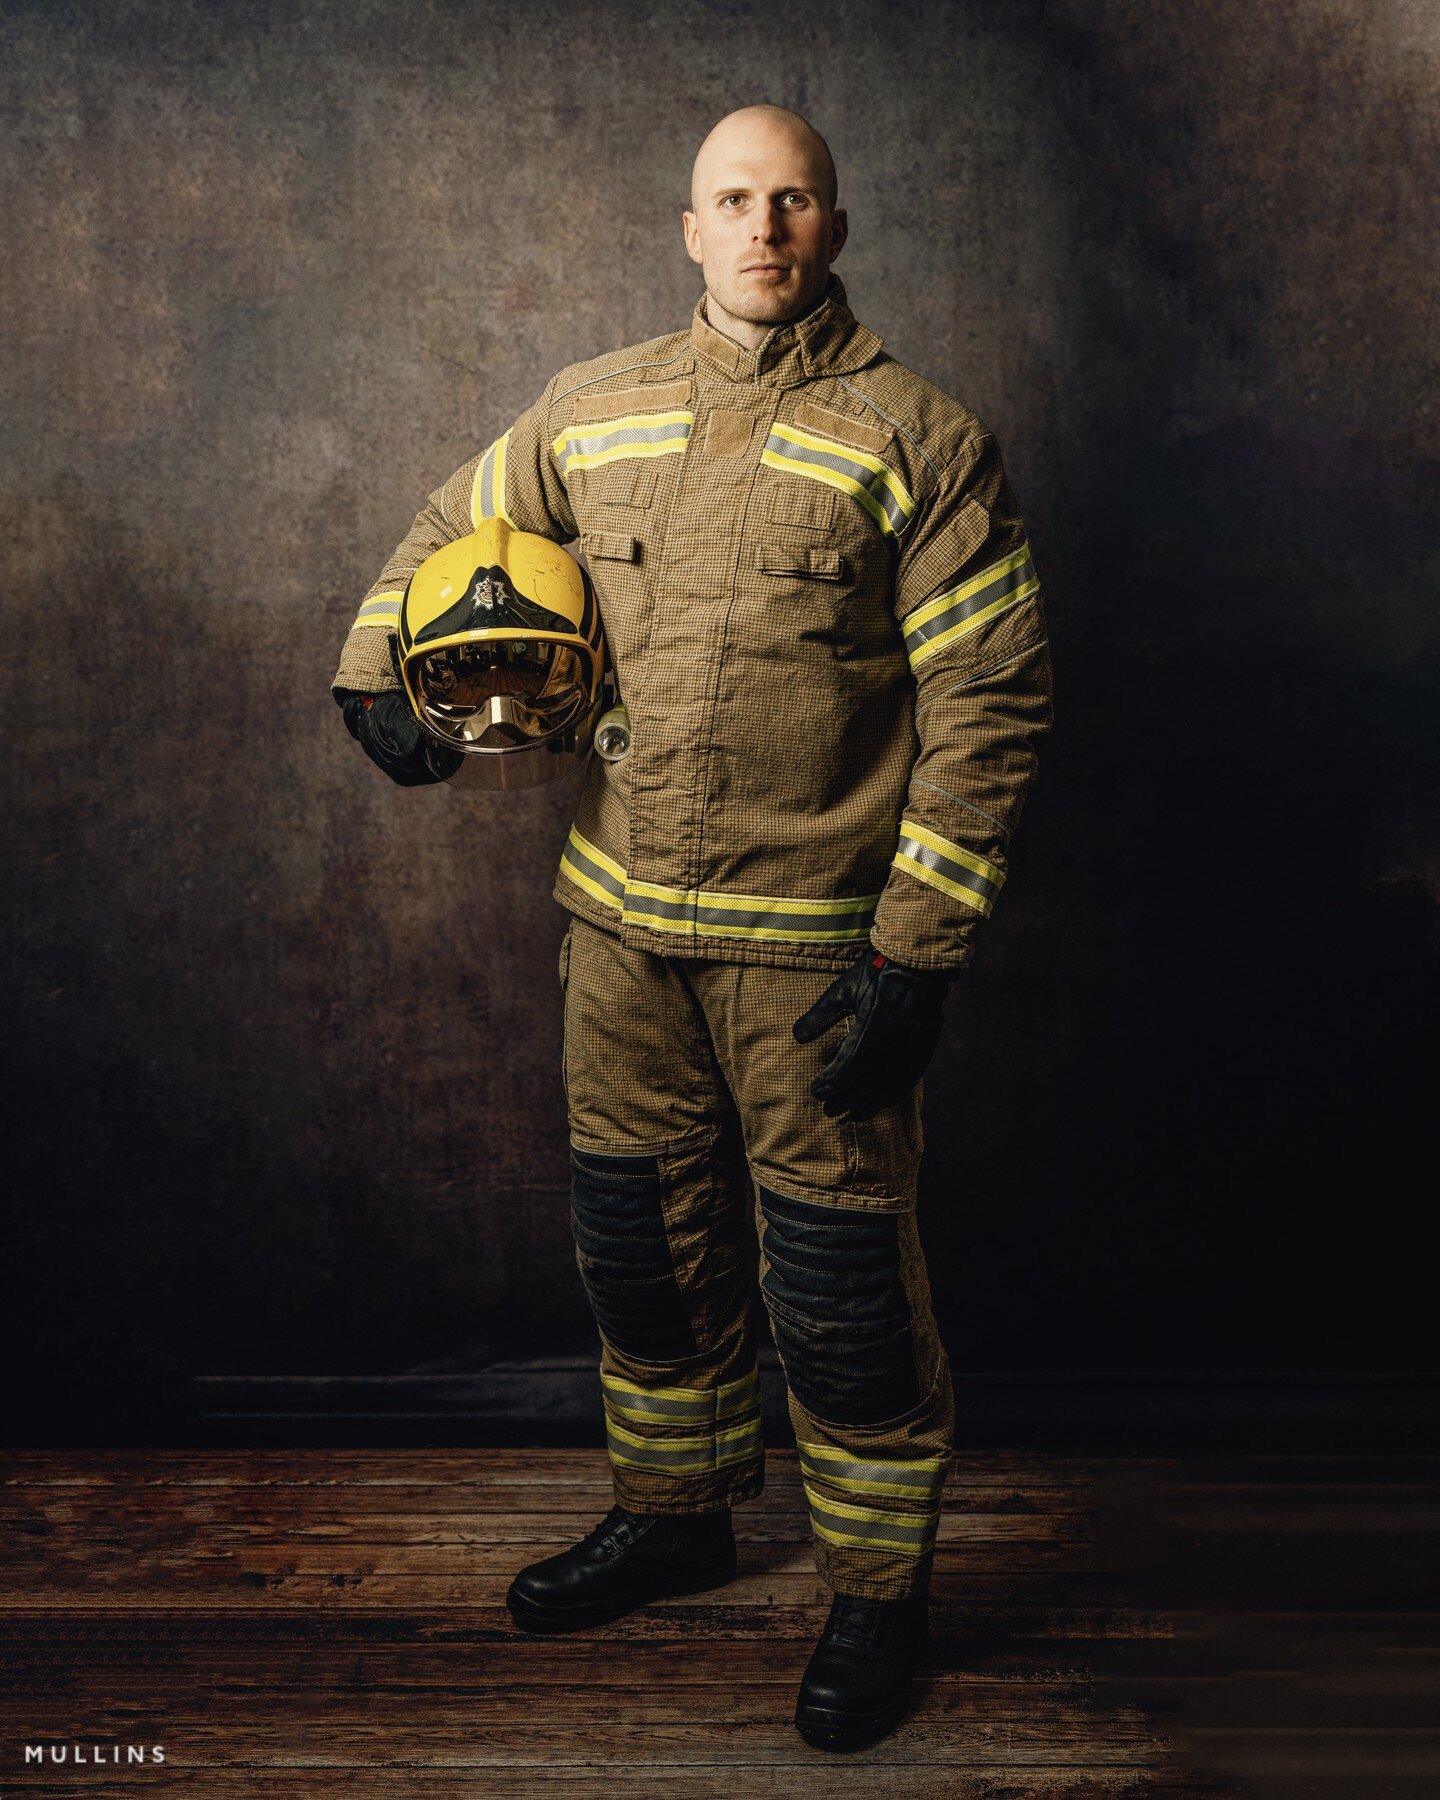 Ian

#fireman #portrait #wiltshireheadshotphotographer #studioportrait